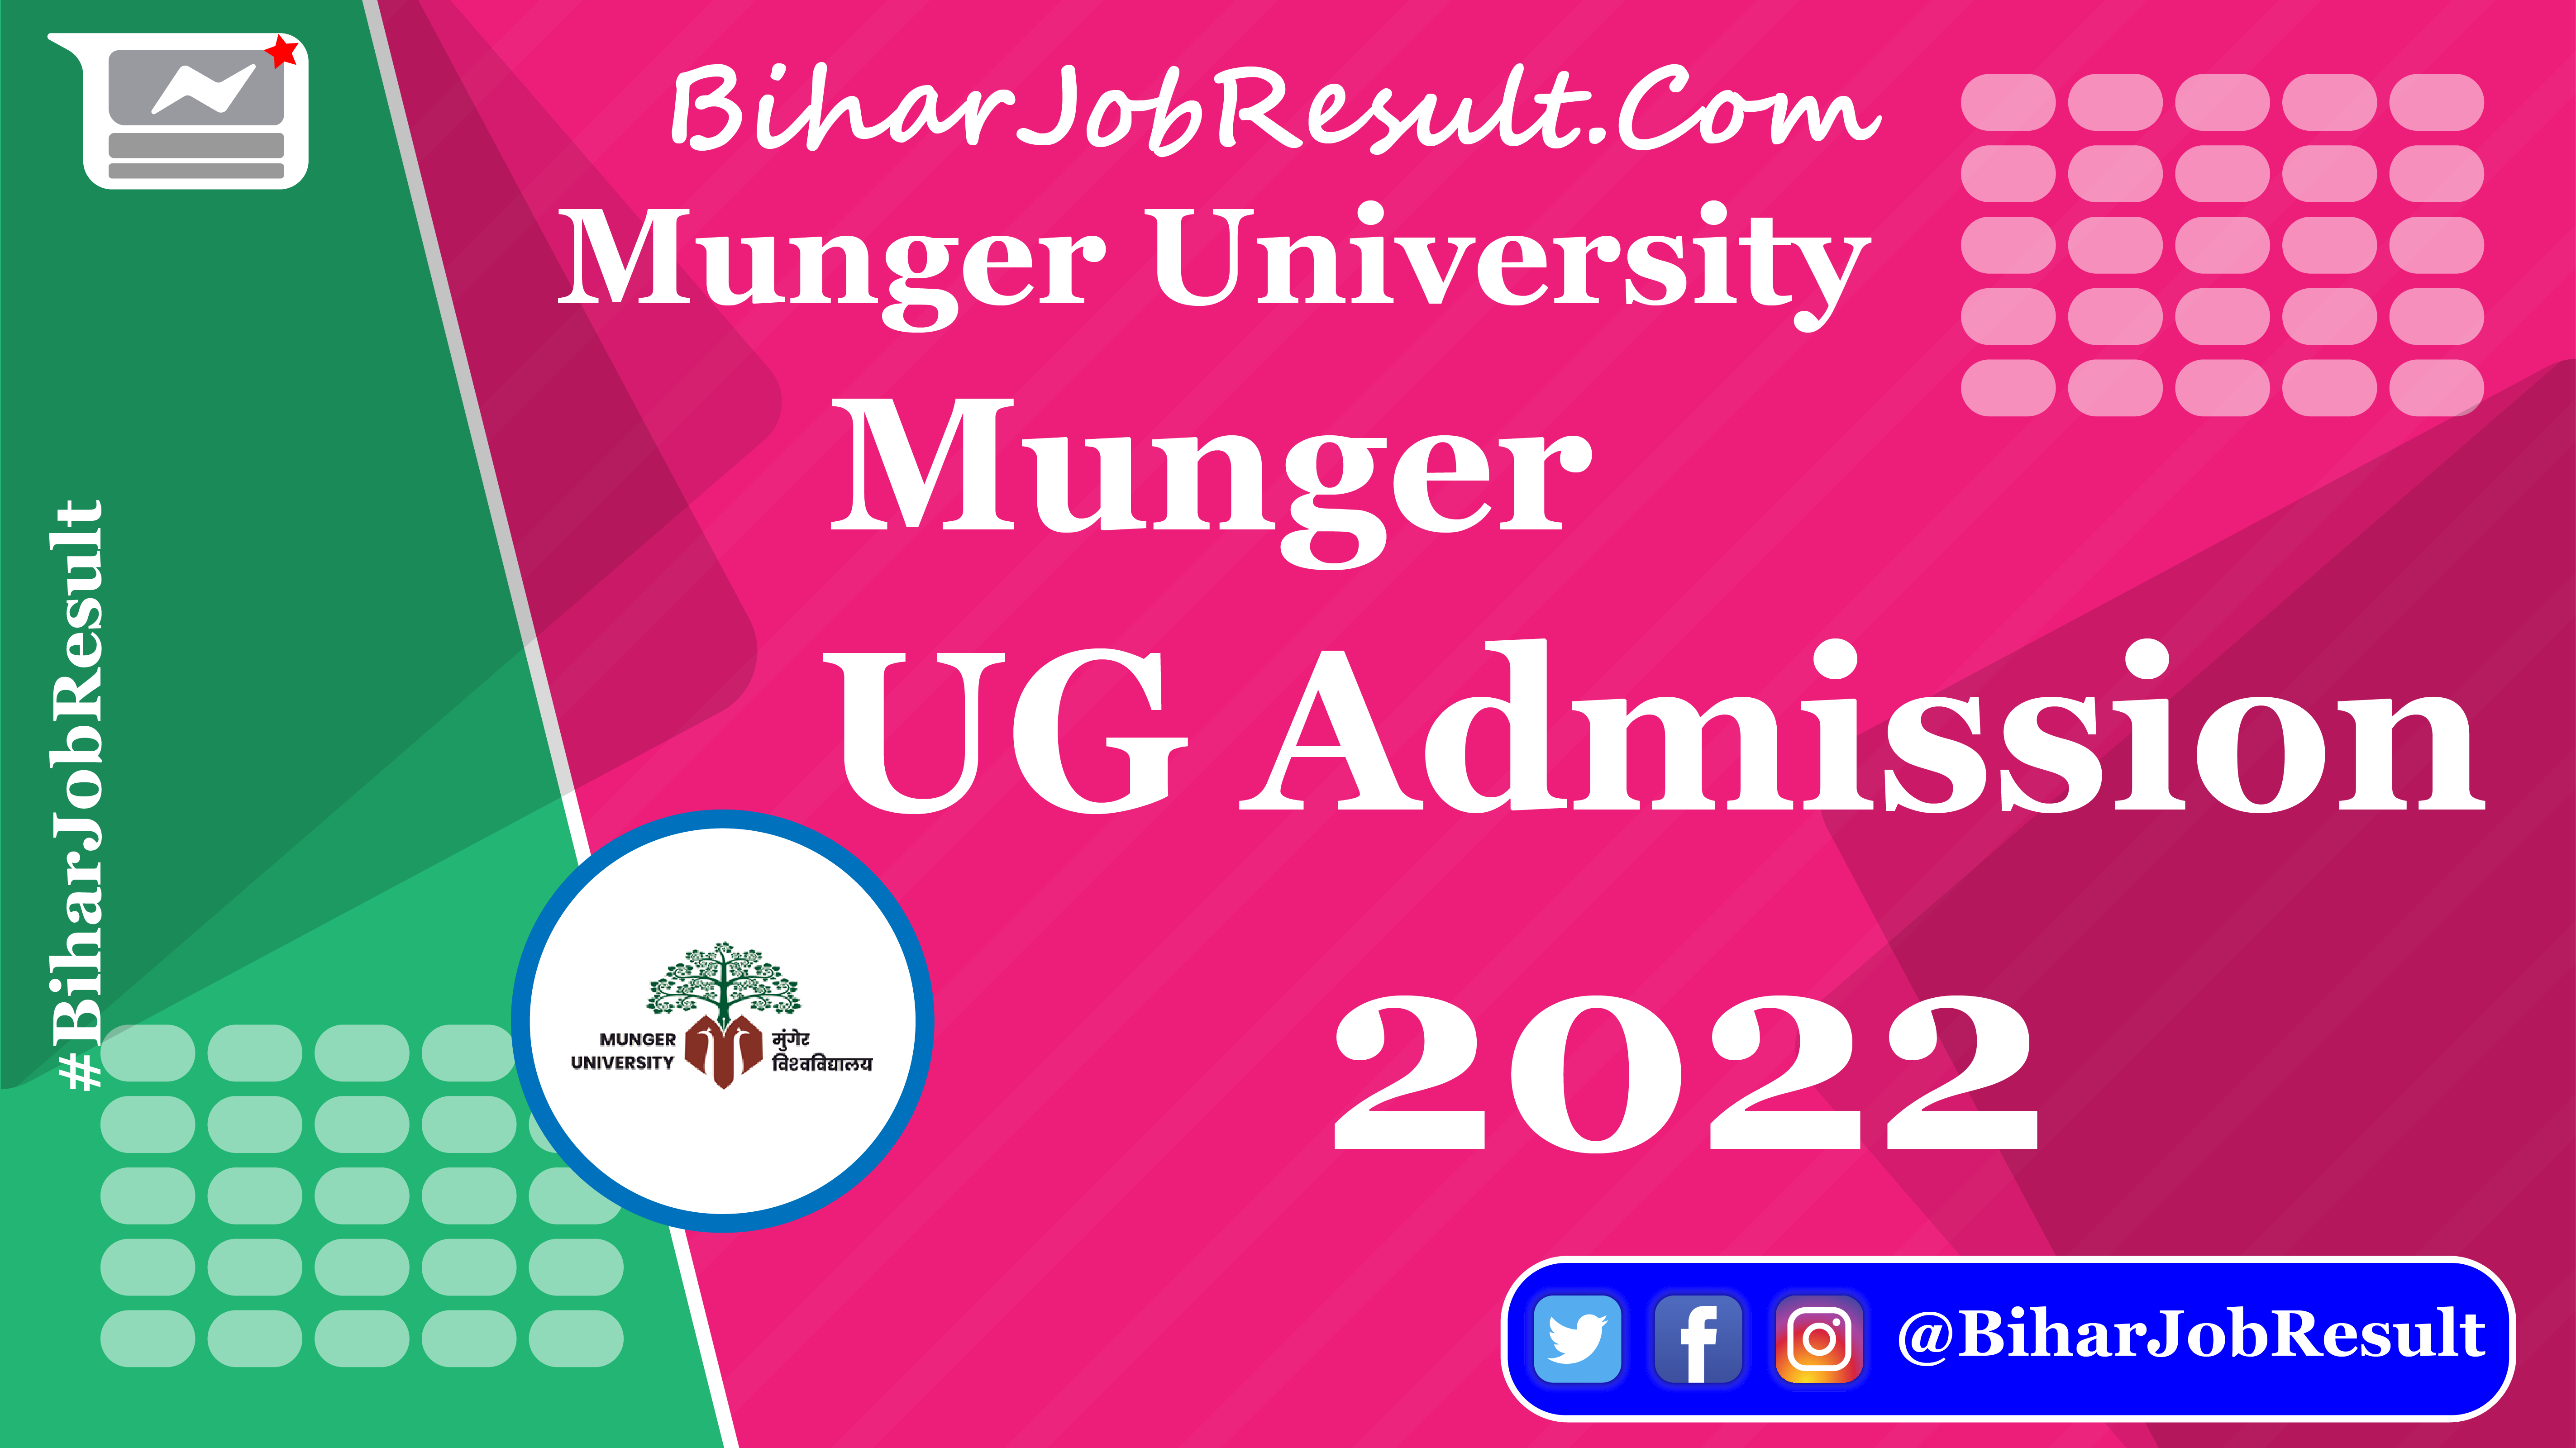 Munger University UG Admission 2022